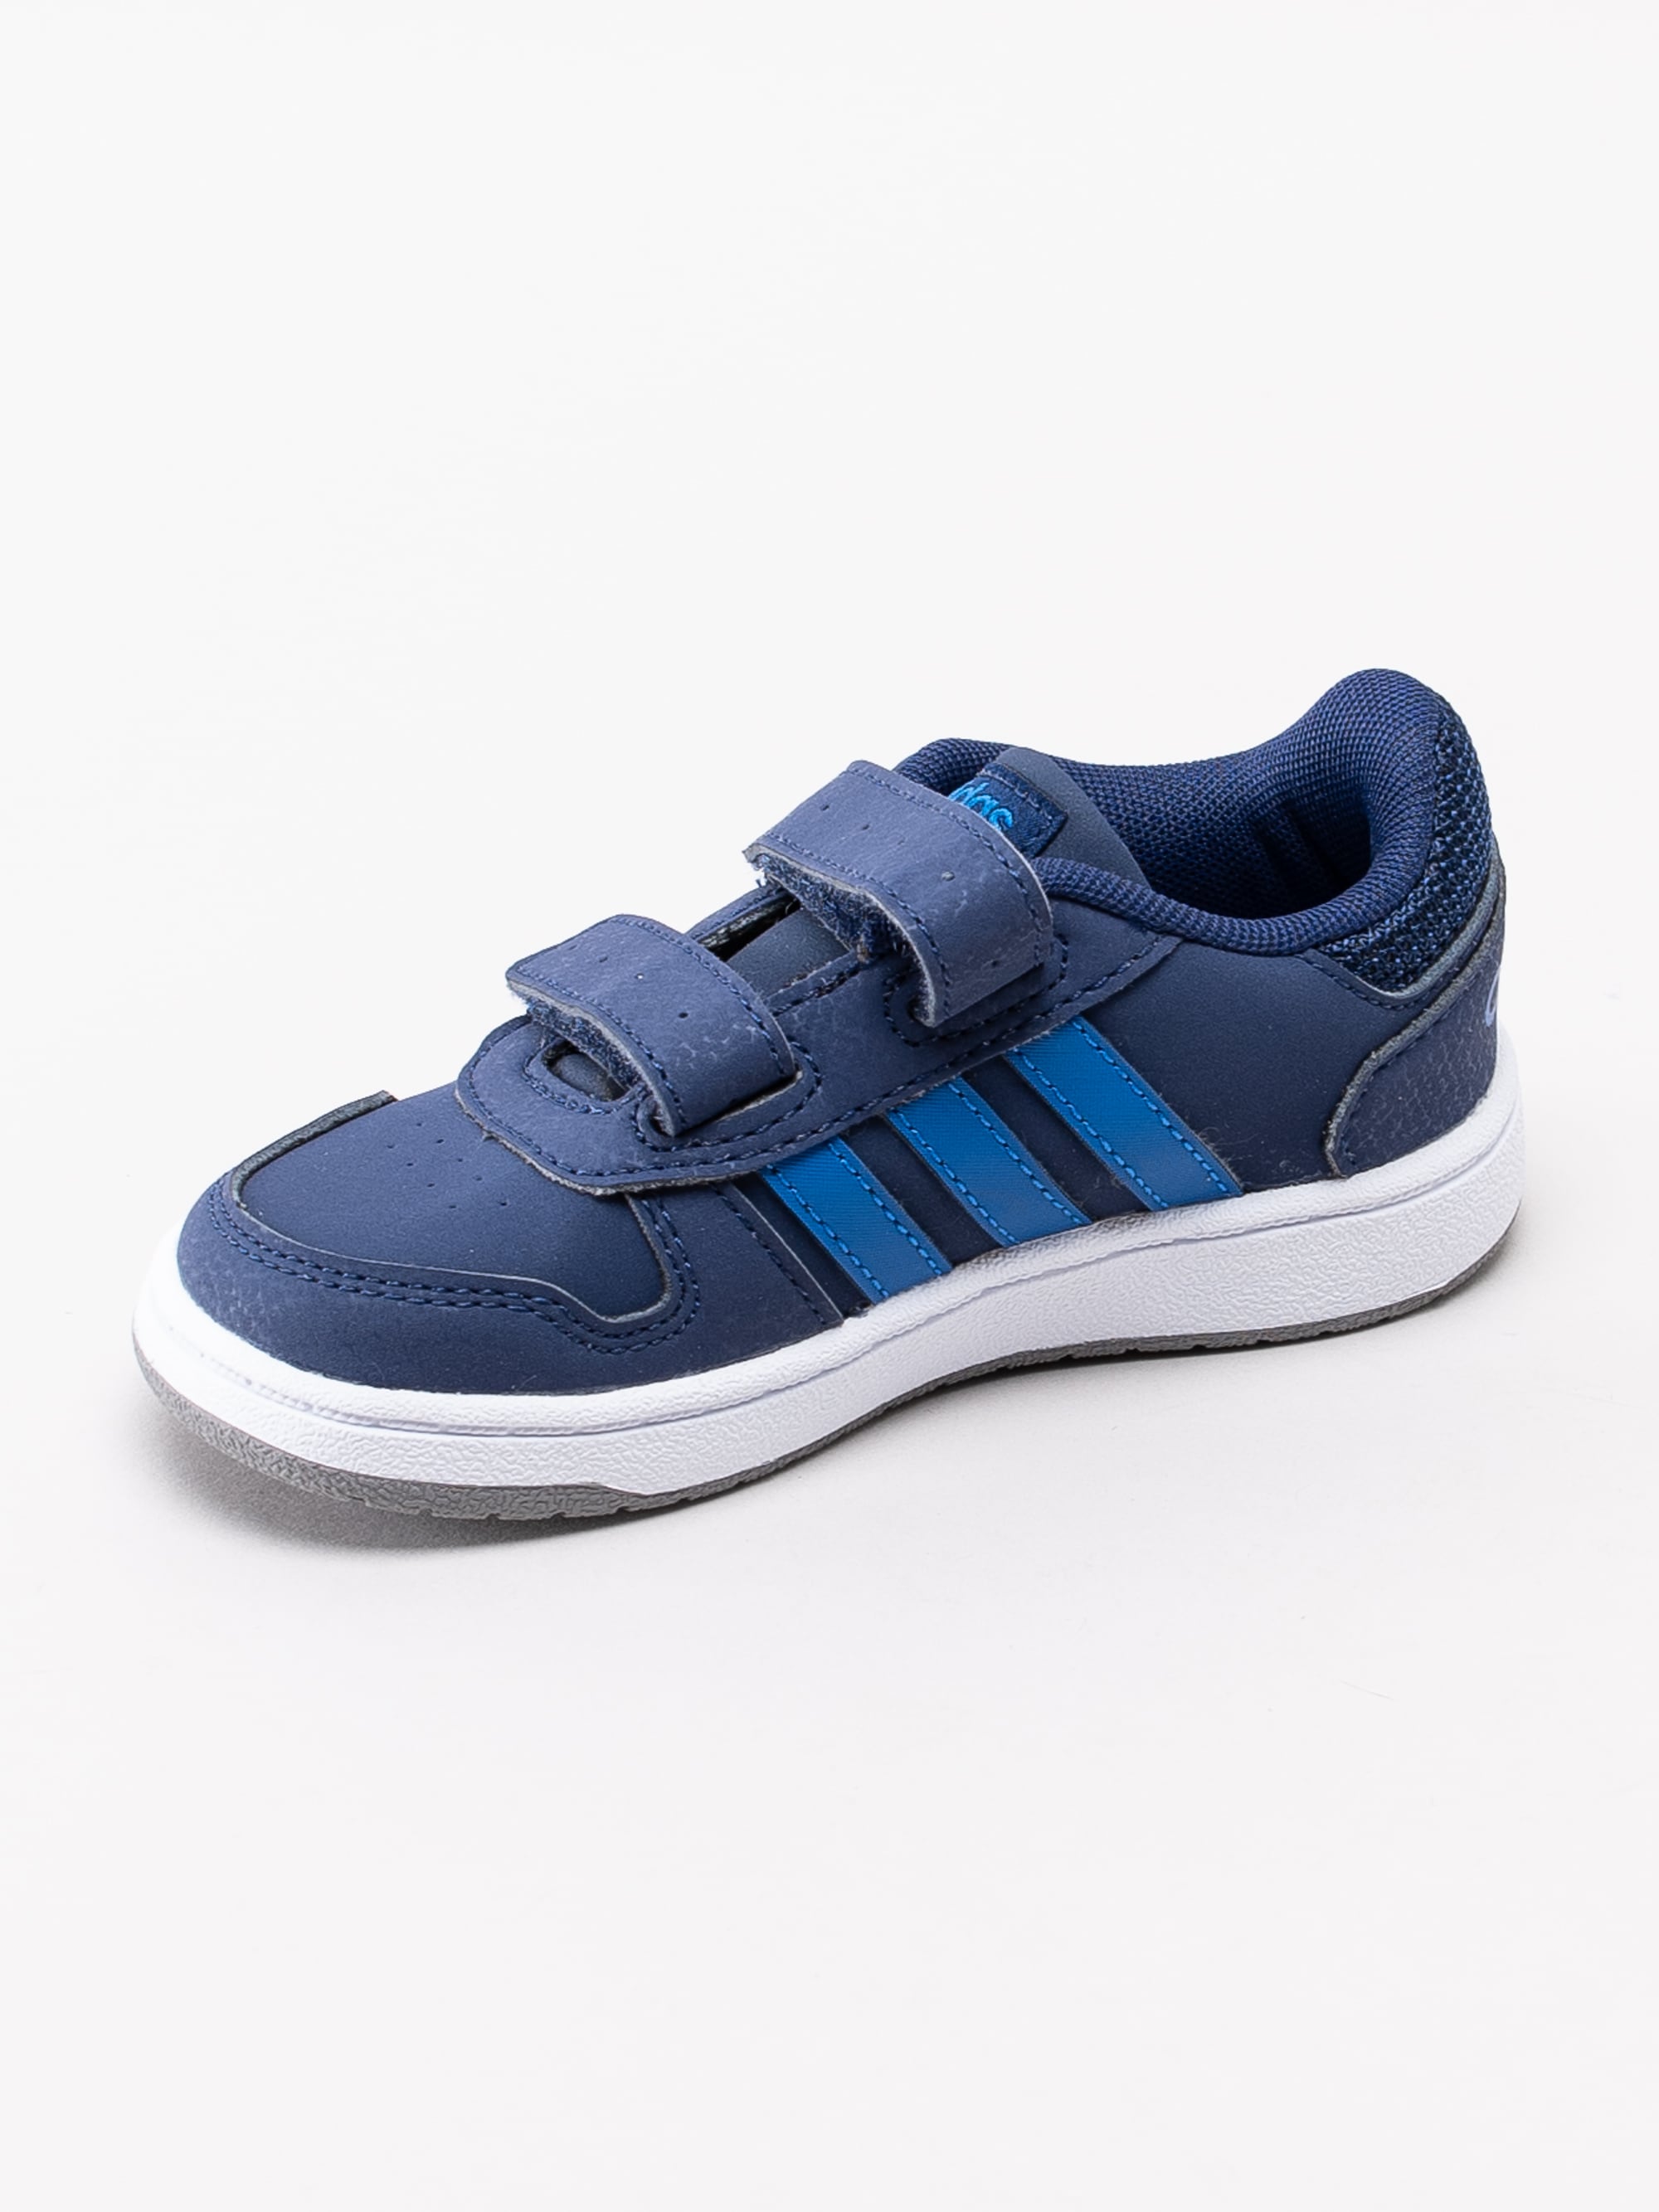 56193009 Adidas Hoops 2.0 Cmf I EE9001 mörkblå sneakers för små barn med kardborre-2